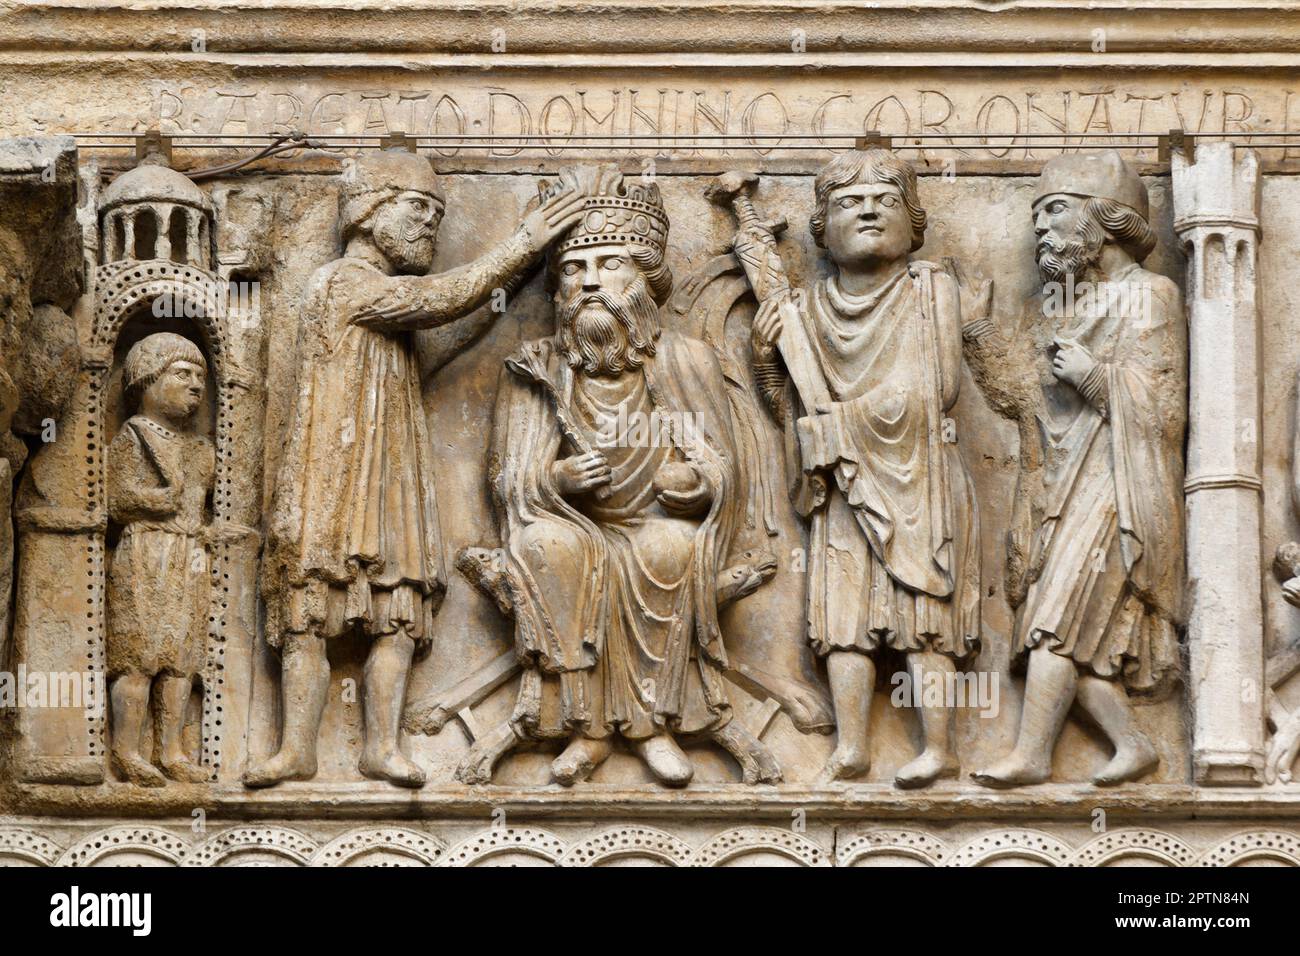 San Donnino incorona l'imperatore Massimiano - Cattedrale di Fidenza, uno dei migliori capolavori del romanico, Italia Foto Stock